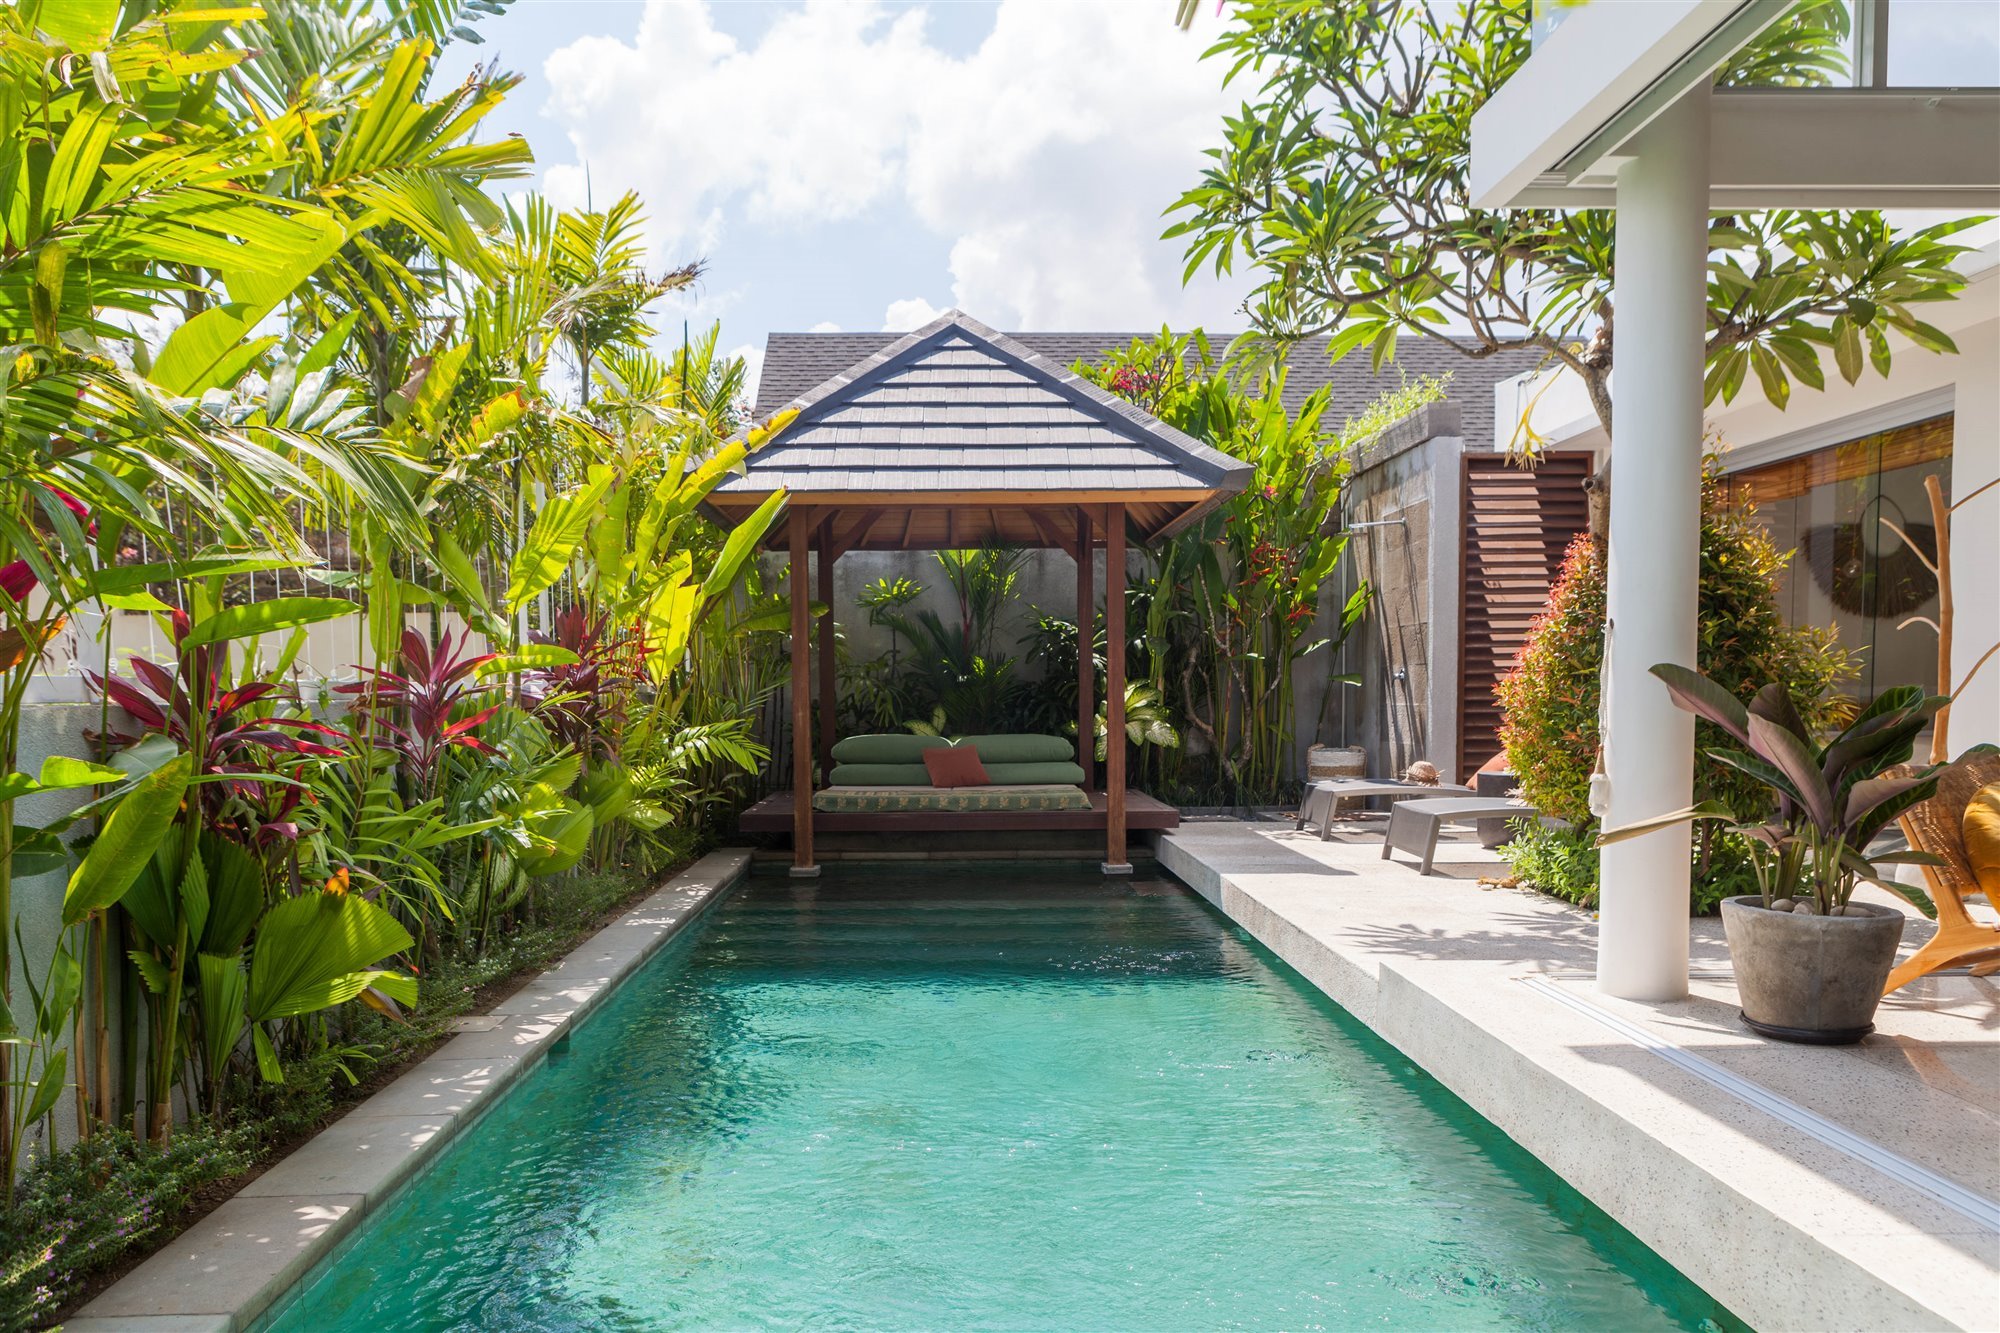 Casa moderna en Bali con fachada de madera piscina